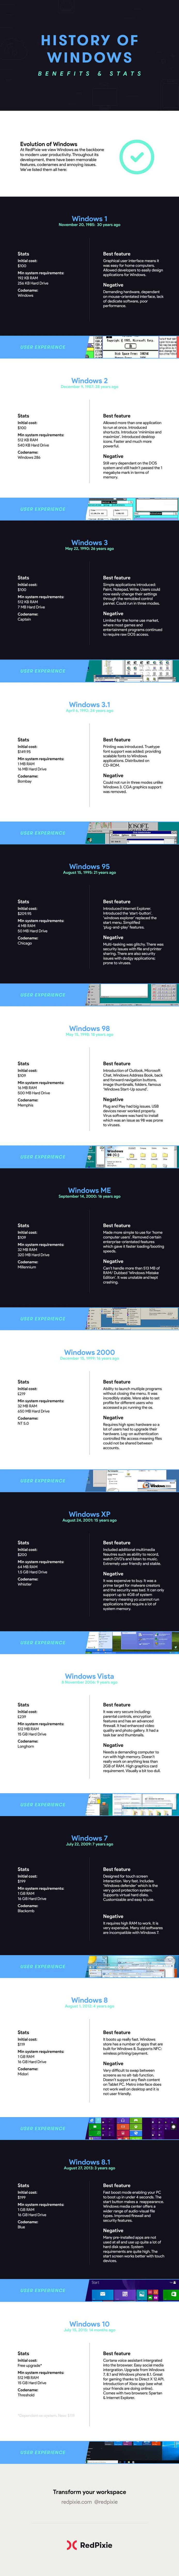 Windows versions